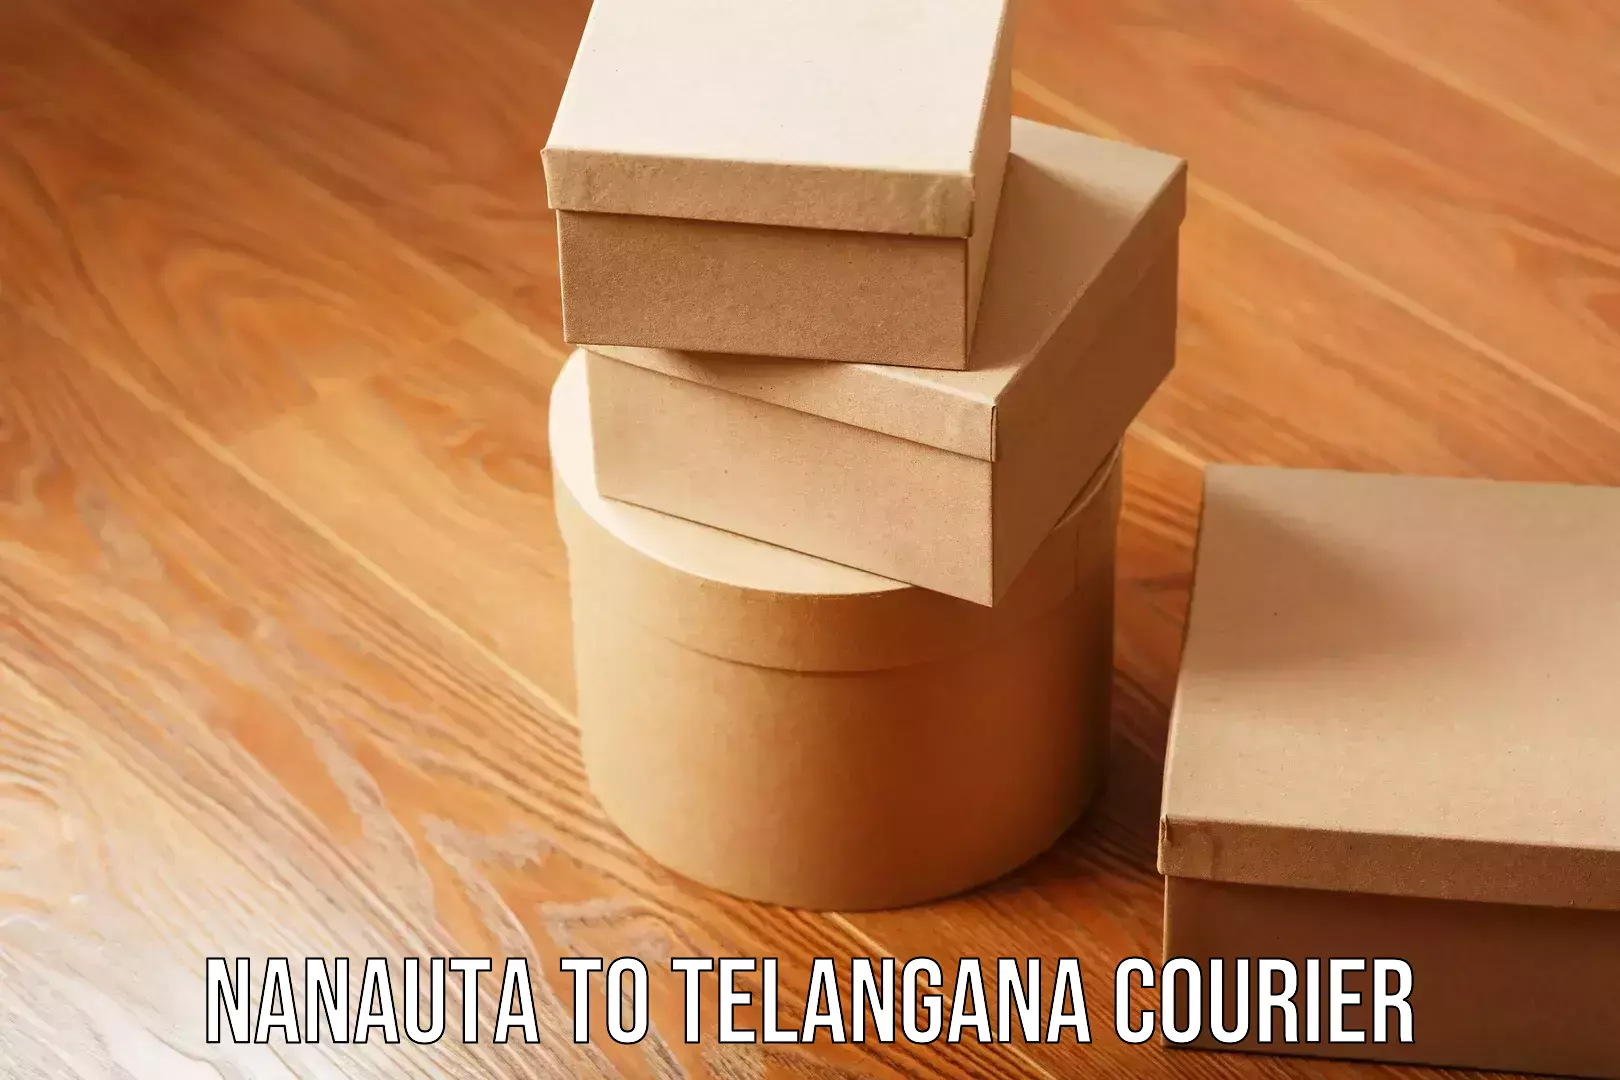 Reliable home moving Nanauta to Telangana